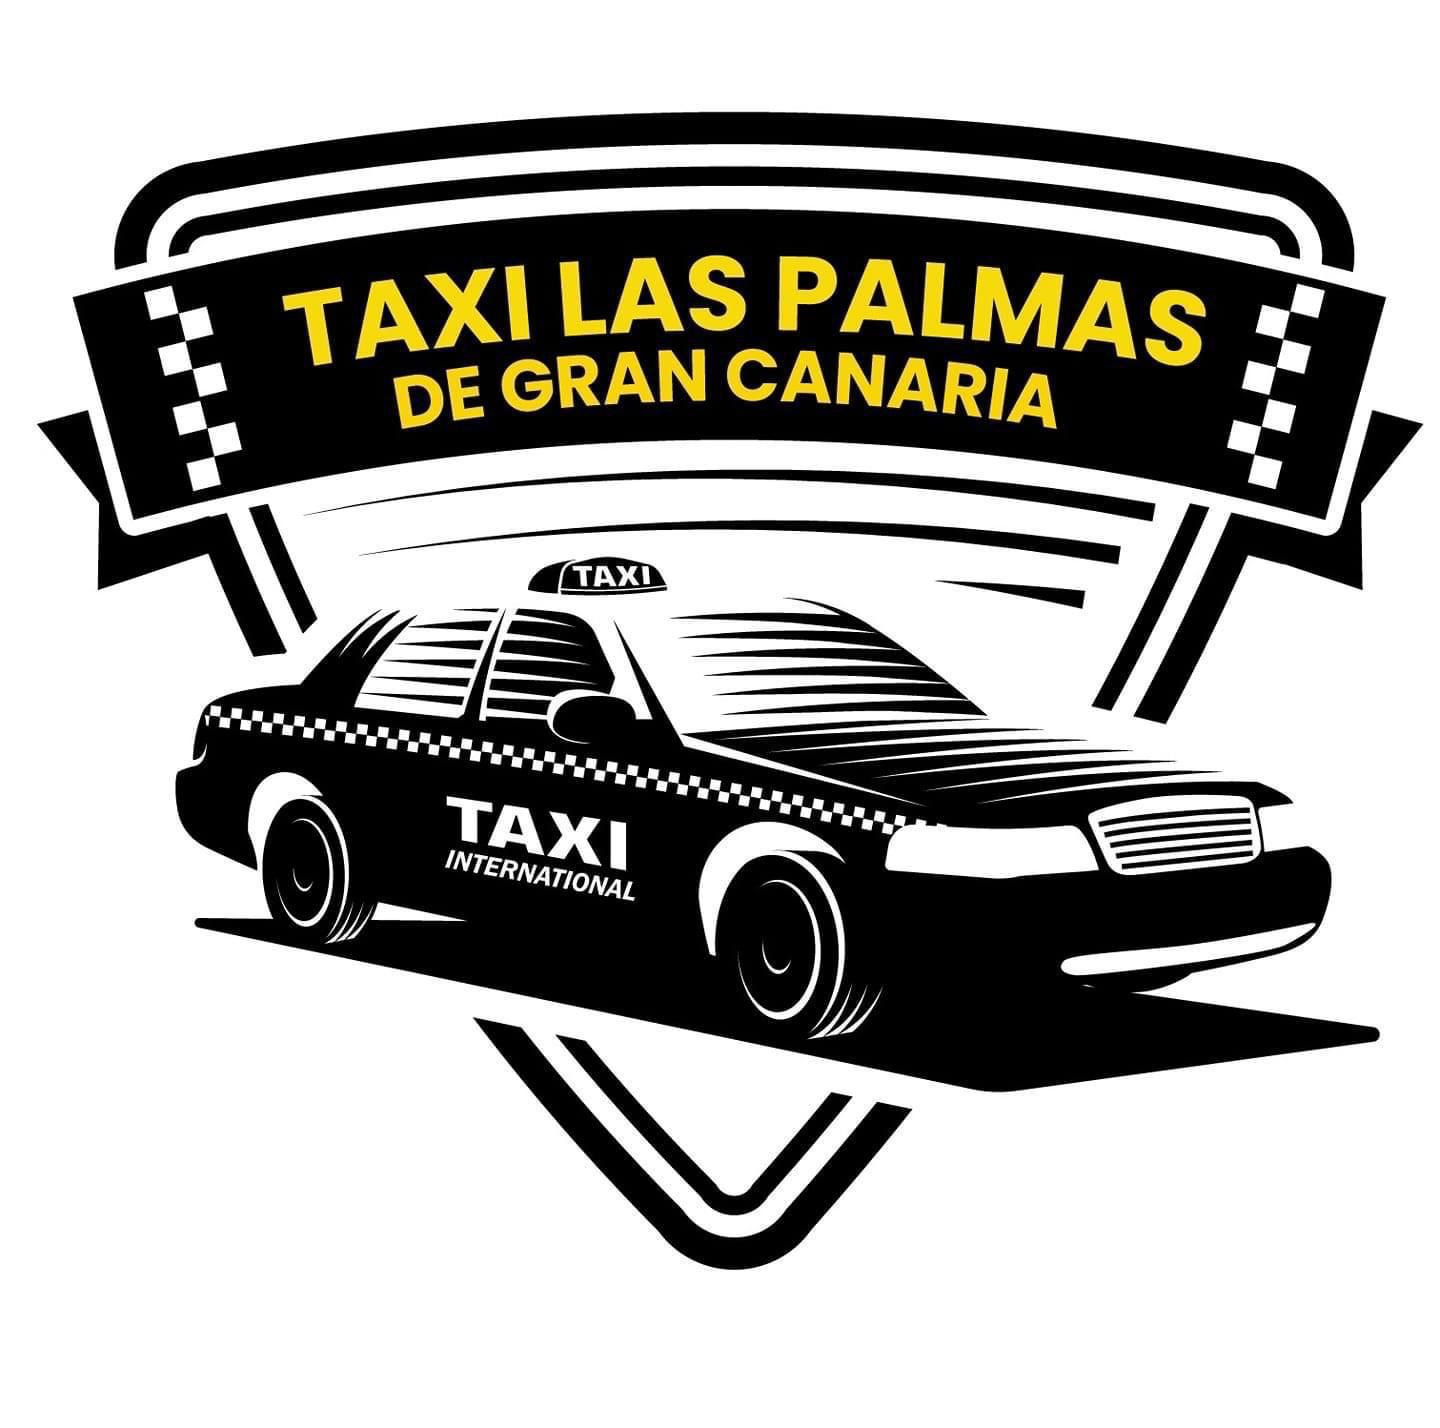 Taxi 24 Horas Las Palmas de Gran Canaria (Taxi Las Palmas)